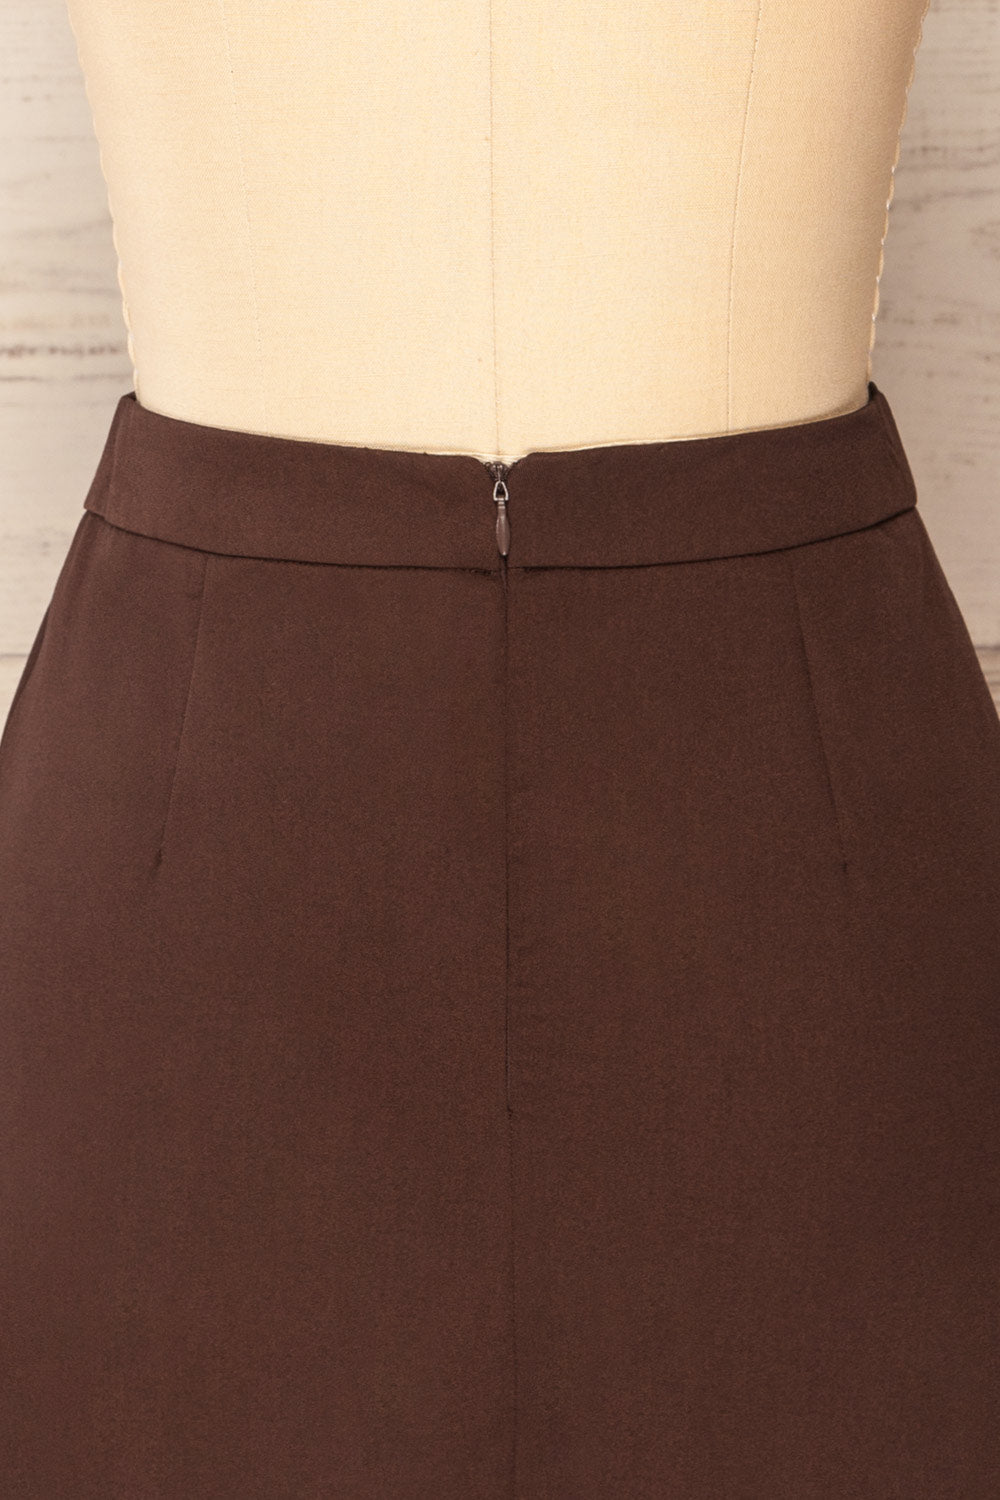 Rivas Brown Short Skirt with Slit | La petite garçonne back close-up